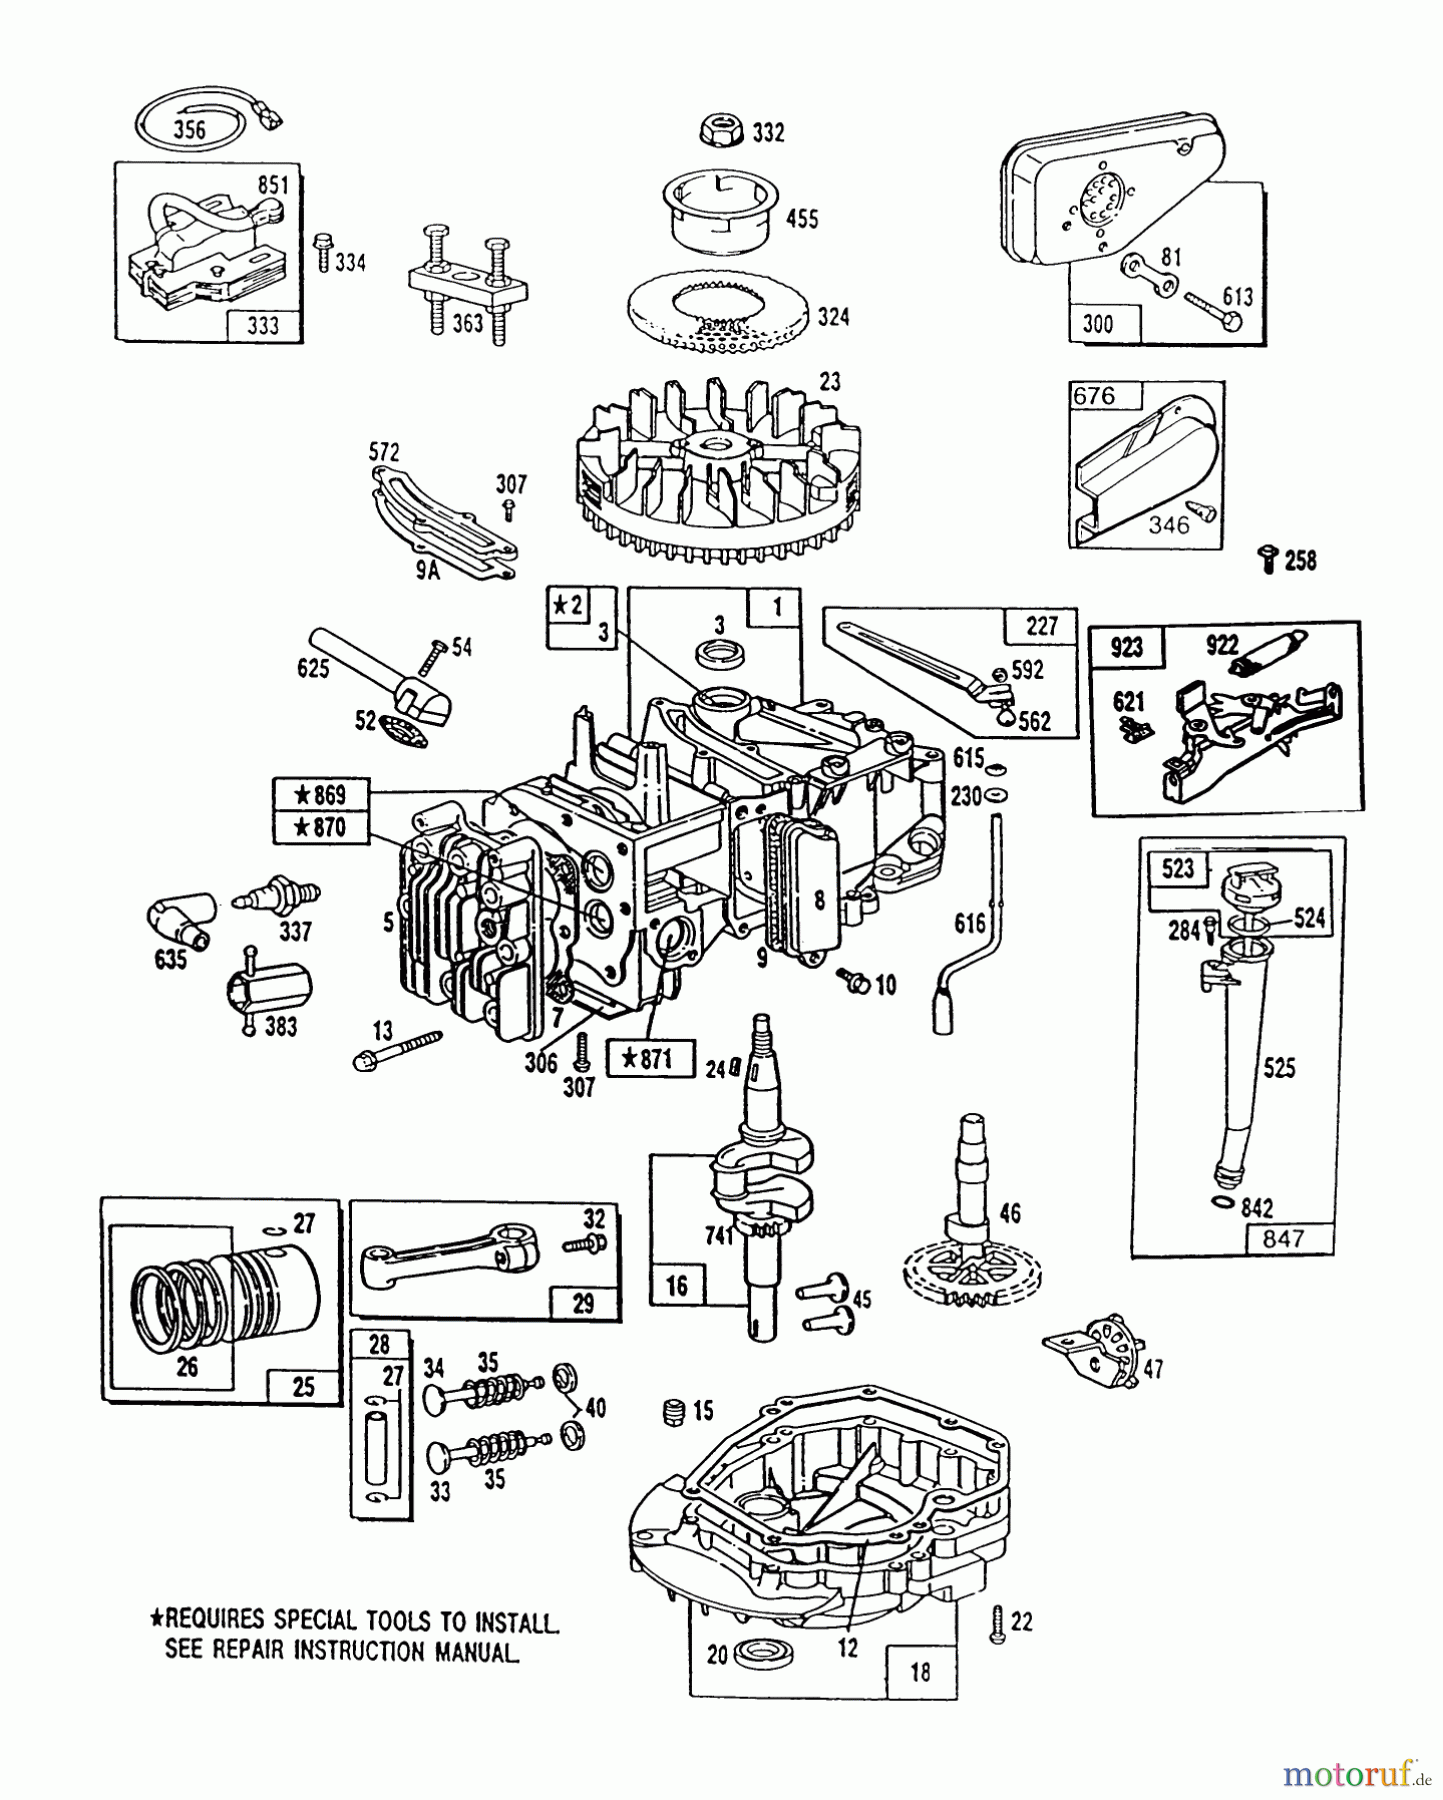  Toro Neu Mowers, Walk-Behind Seite 1 20666 - Toro Lawnmower, 1990 (0000001-0999999) ENGINE MODEL NO. 124702-3115-01 #1